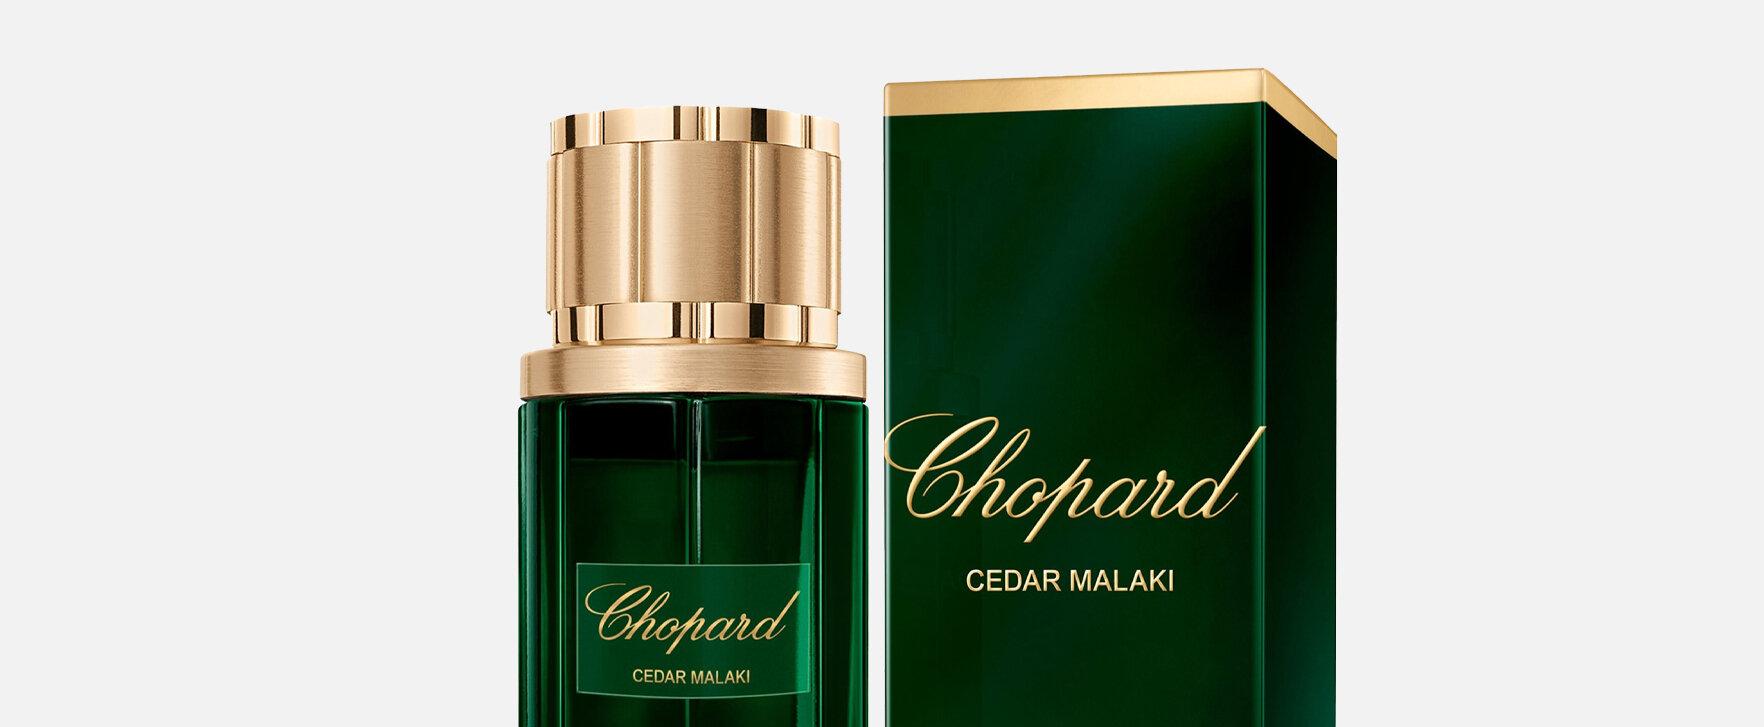 Eine olfaktorische Reise zur Königin der Nadelgehölze: „Cedar Malaki“ von Chopard